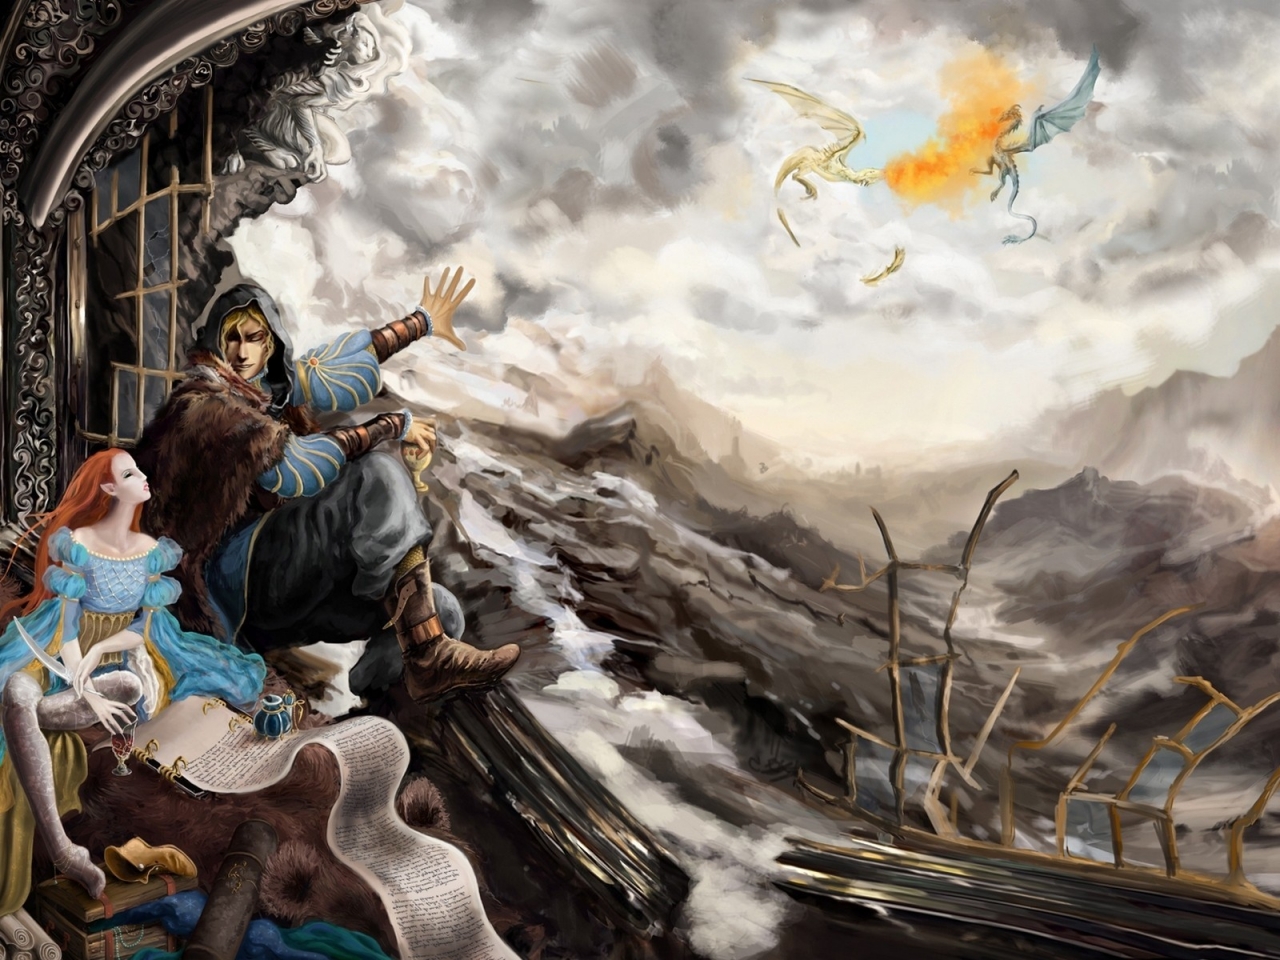 The Elder Scrolls V Skyrim Poster for 1280 x 960 resolution